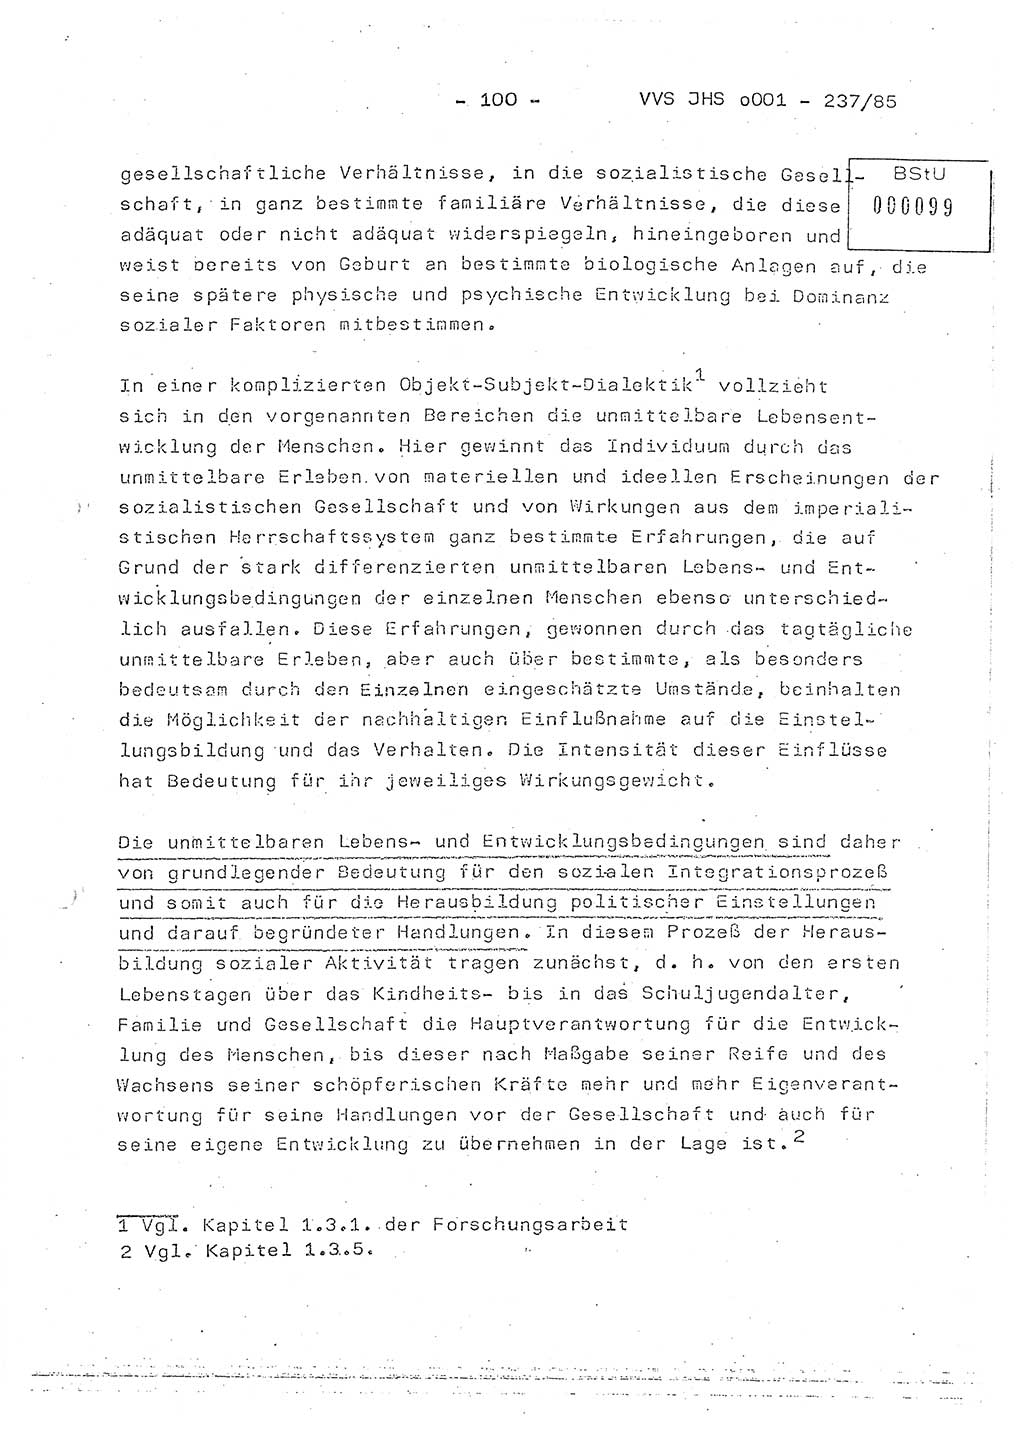 Dissertation Oberstleutnant Peter Jakulski (JHS), Oberstleutnat Christian Rudolph (HA Ⅸ), Major Horst Böttger (ZMD), Major Wolfgang Grüneberg (JHS), Major Albert Meutsch (JHS), Ministerium für Staatssicherheit (MfS) [Deutsche Demokratische Republik (DDR)], Juristische Hochschule (JHS), Vertrauliche Verschlußsache (VVS) o001-237/85, Potsdam 1985, Seite 100 (Diss. MfS DDR JHS VVS o001-237/85 1985, S. 100)